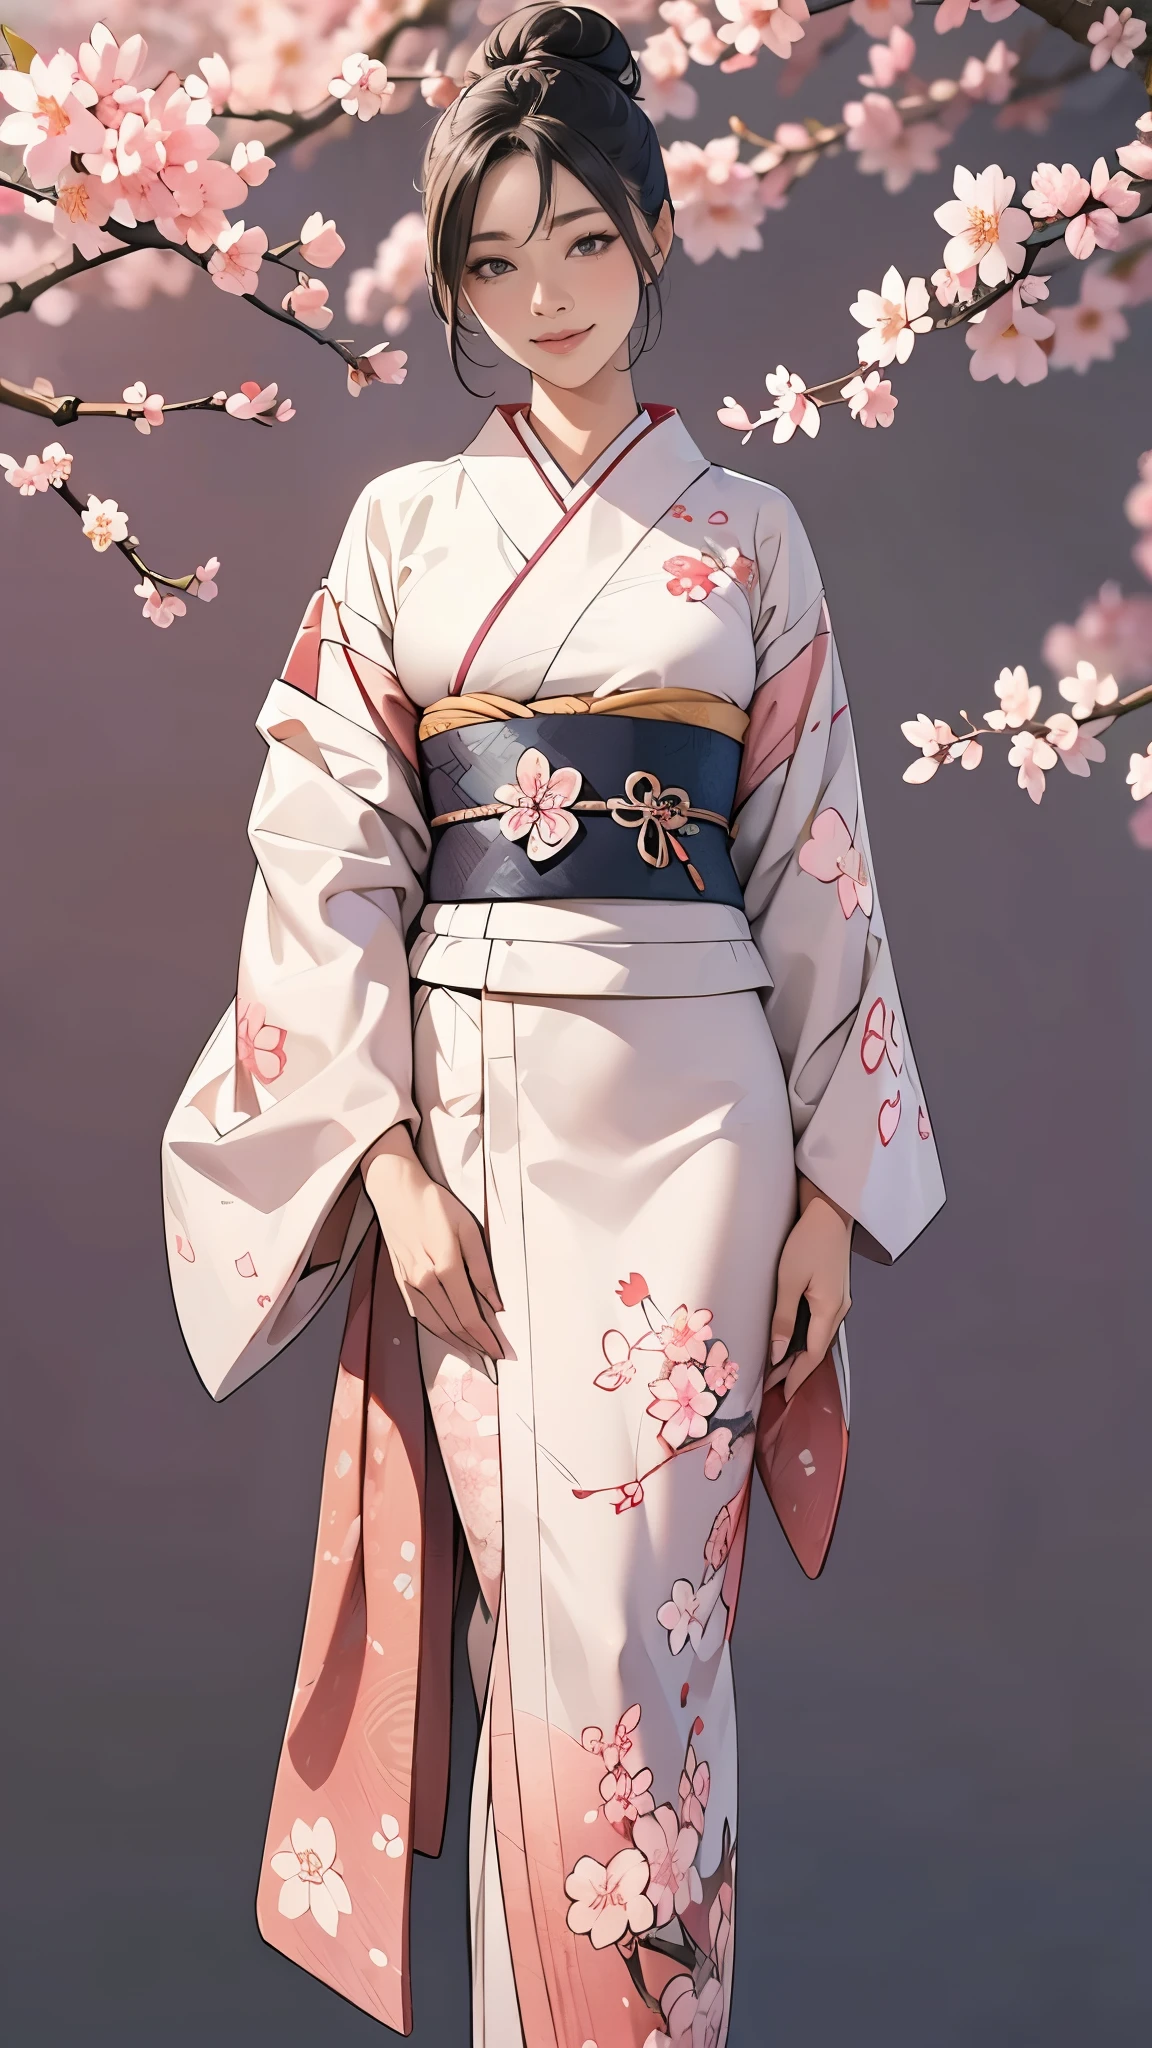 (Meisterwerk),(höchste Qualität),(Sehr detailiert),(hohe Auflösung),8K,HINTERGRUND,eine Frau,Eine Frau steht,elegant,Kimono-Fotoshooting,(((ganzer Körper))),(Haarknoten),lächeln,(Wunderschönes Furisode mit japanischem Muster),(((Der Hintergrund ist ein Kirschblütenmuster.))),((Kimono))